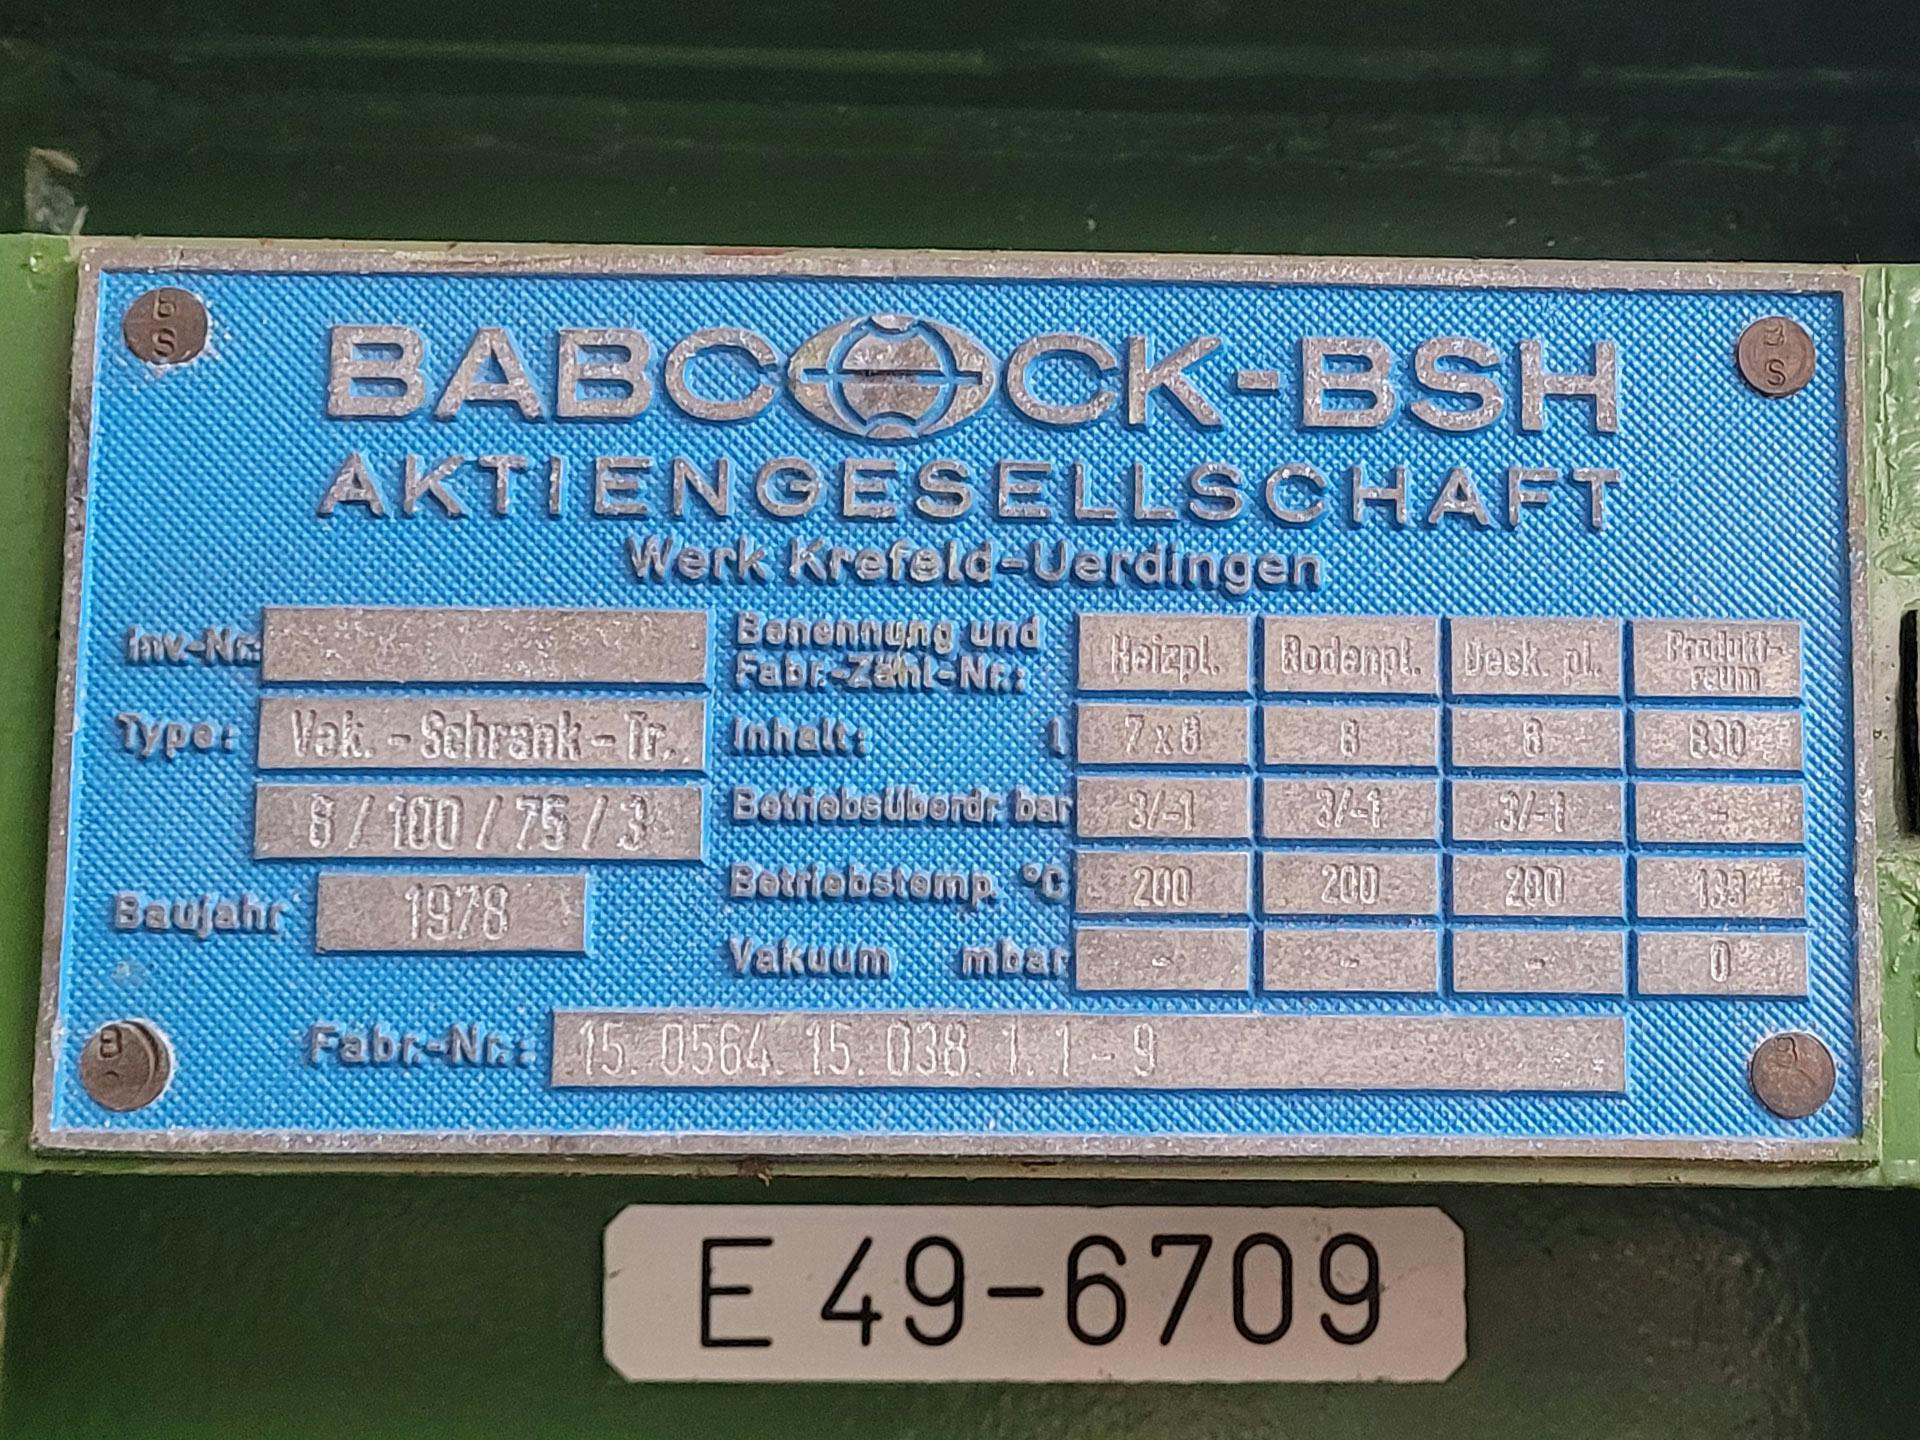 Babcock-BSH 8/100/75-3 - Traydroger - image 4